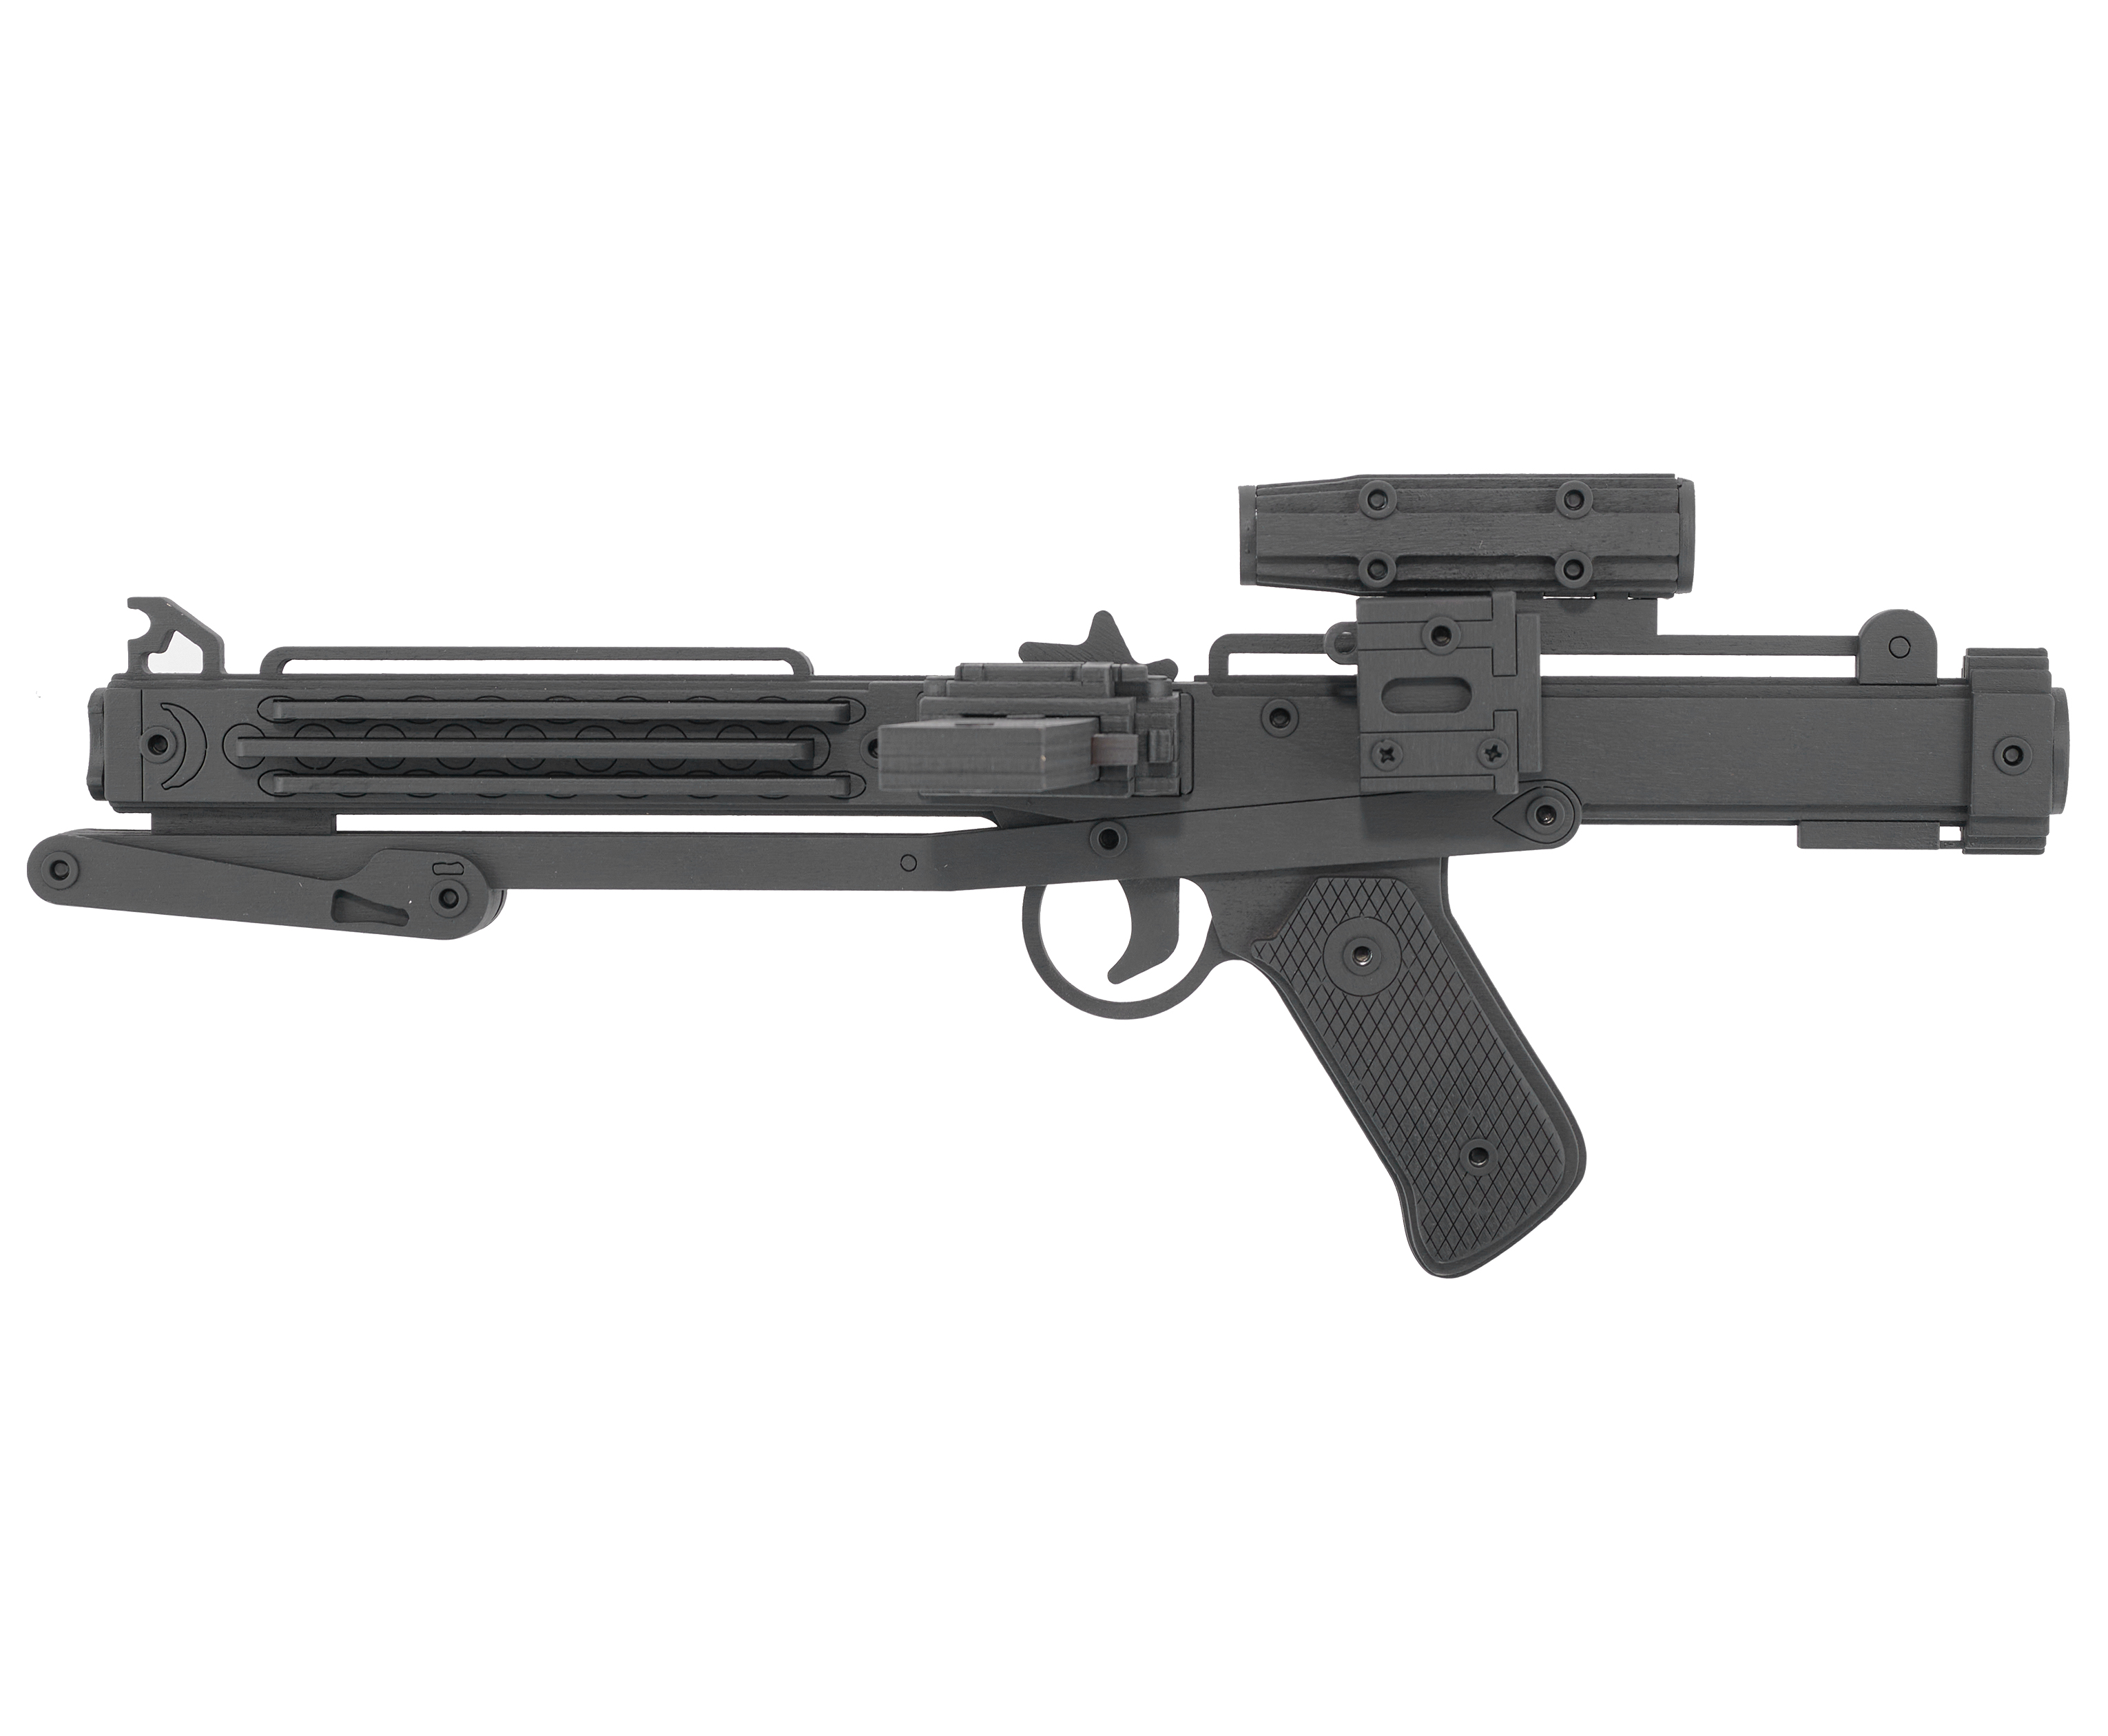 Резинкострел игрушечный Arma toys лазерная винтовка E-11 макет, Star Wars, AT011